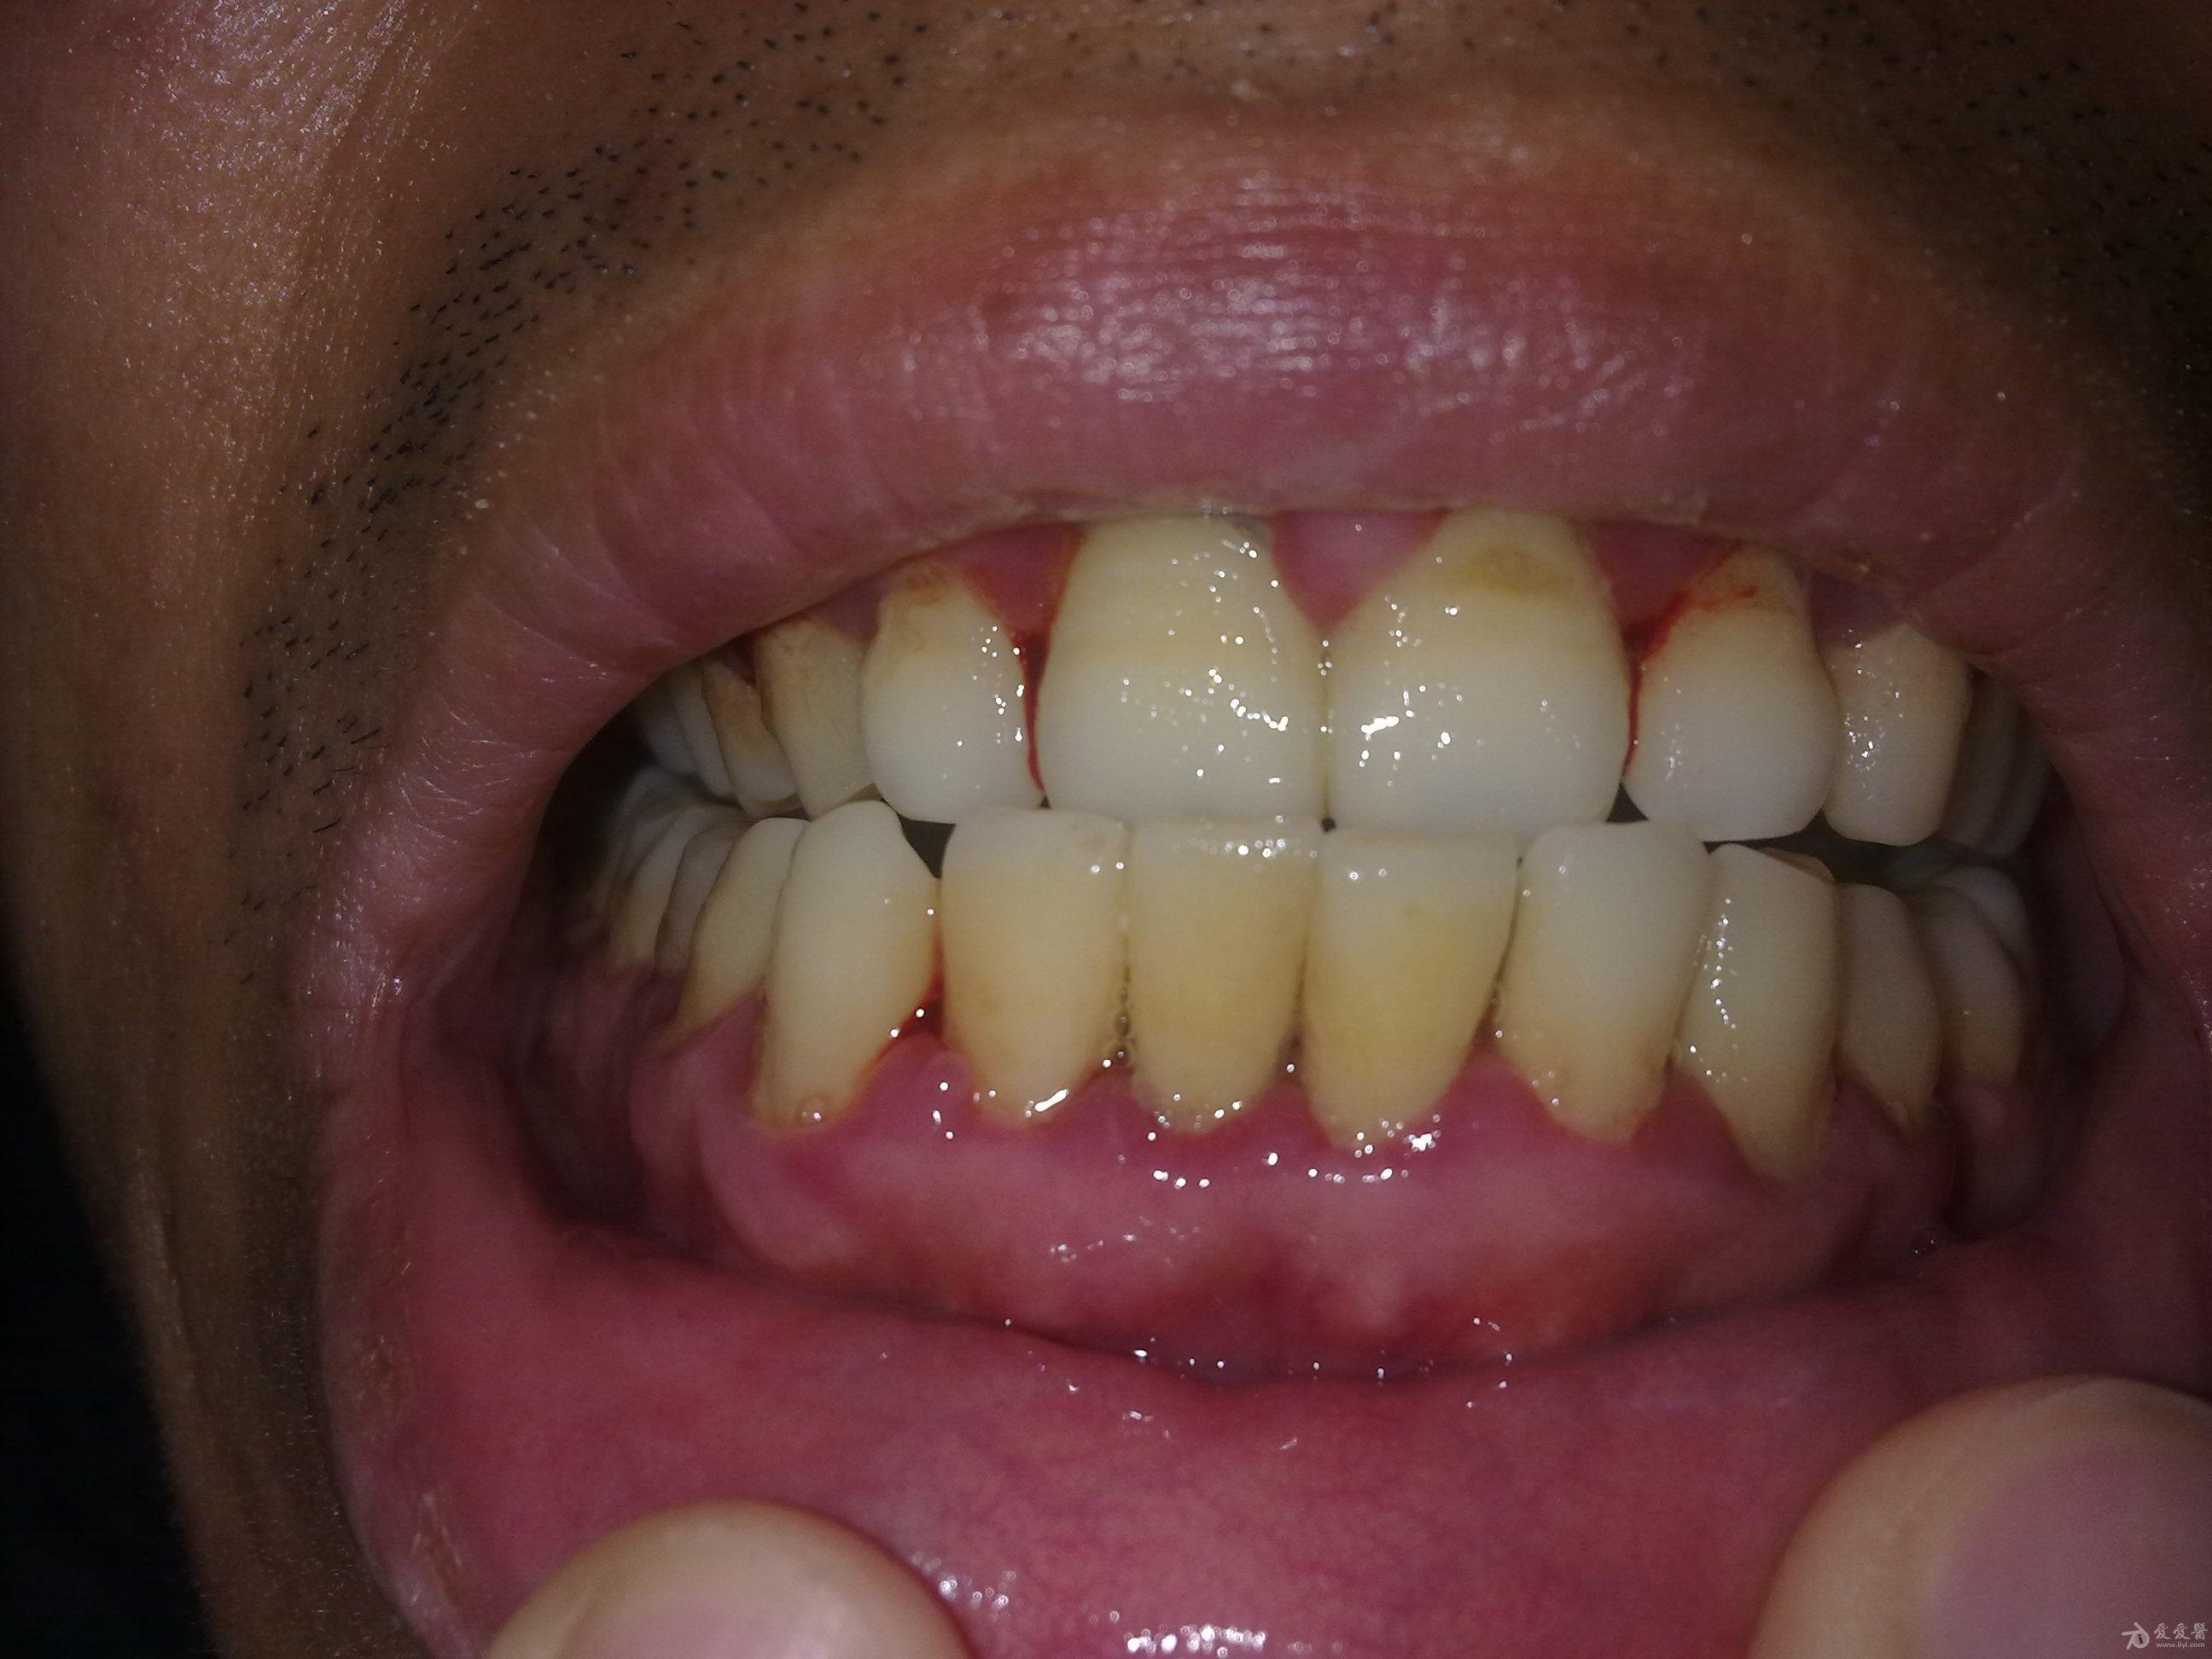 牙龈斑疹图片